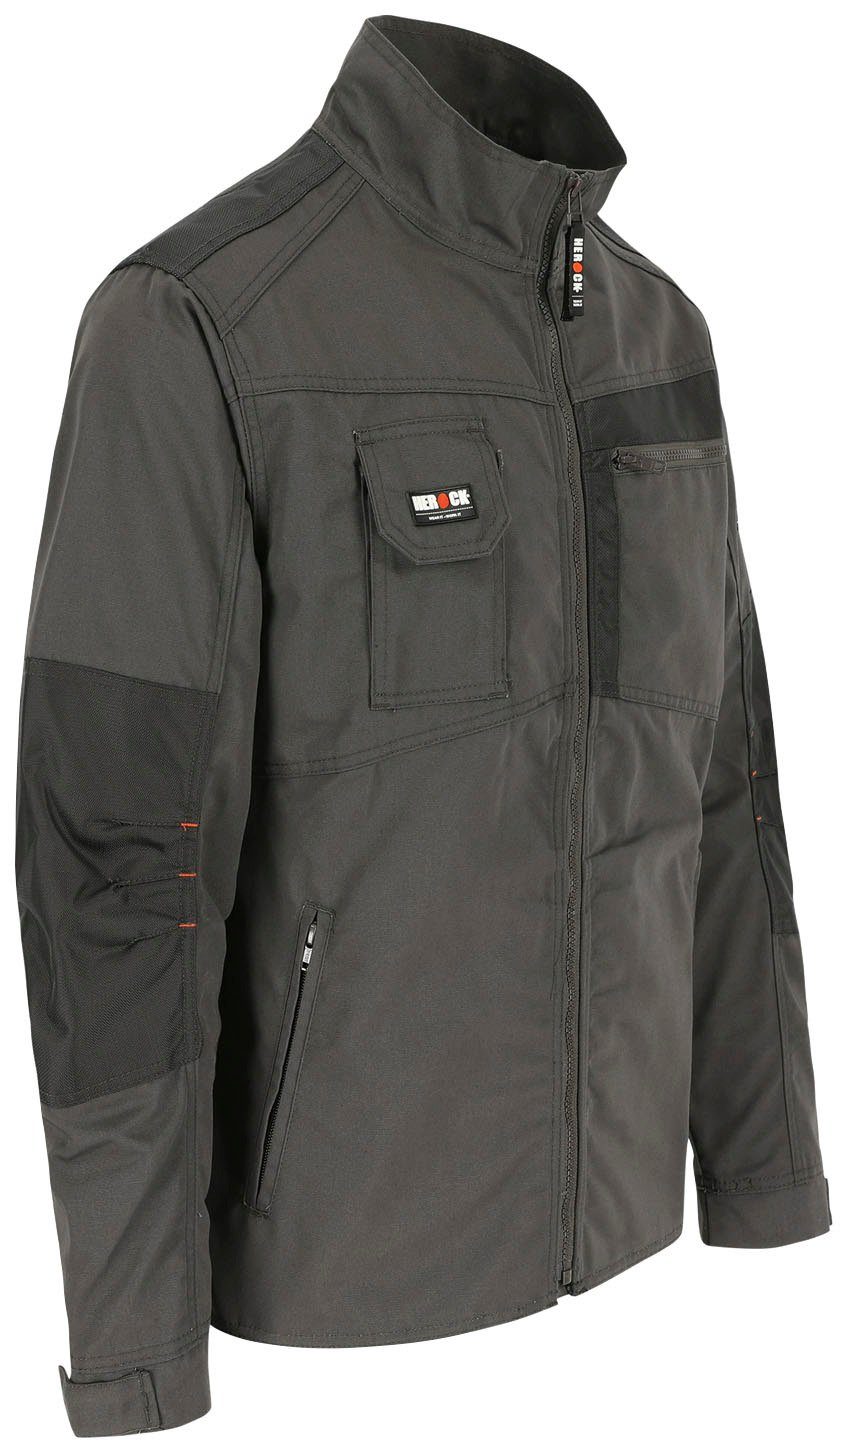 - Arbeitsjacke - Bündchen Anzar grau Wasserabweisend Jacke Herock 7 - verstellbare Taschen robust